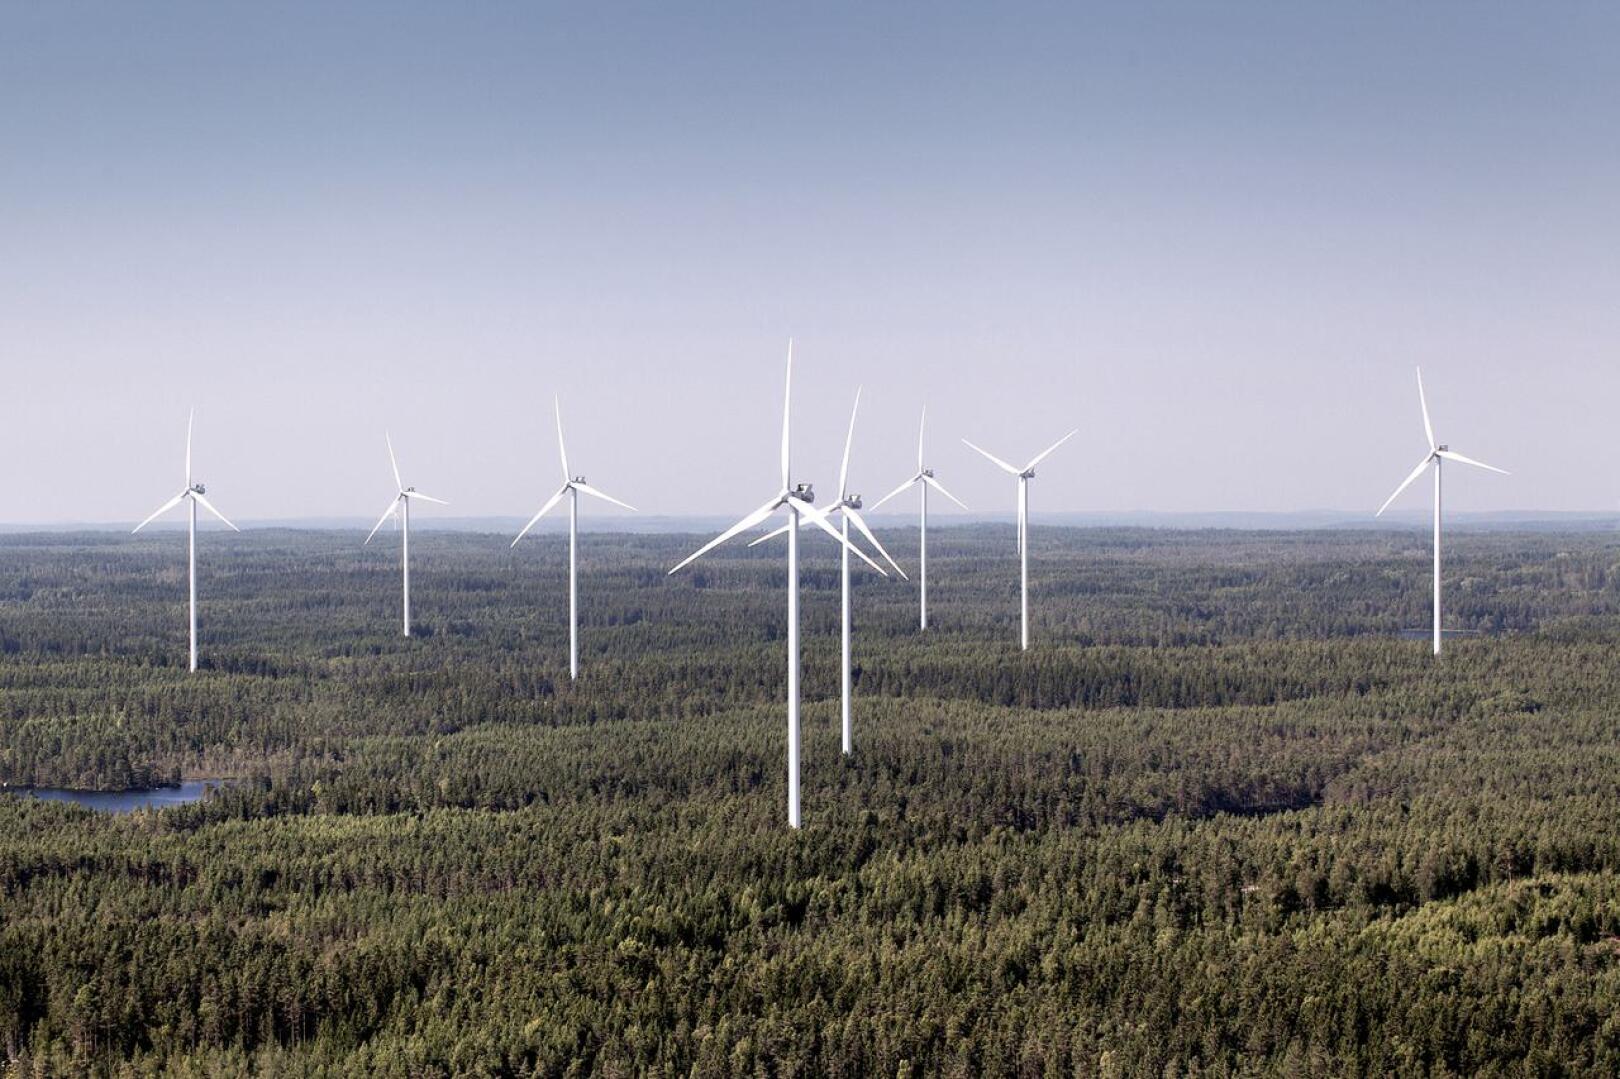 Haapavedelle valmistellaan tuulivoimarakentamista sadoilla miljoonilla euroilla. Millaisia yhtiöitä on suunnitelmien takana? Kuvassa Vestaksen tuulivoimaloita Ruotsissa. Hankilannevalle rakennettavat 8 voimalaa tulevat olemaan samantapaisia.